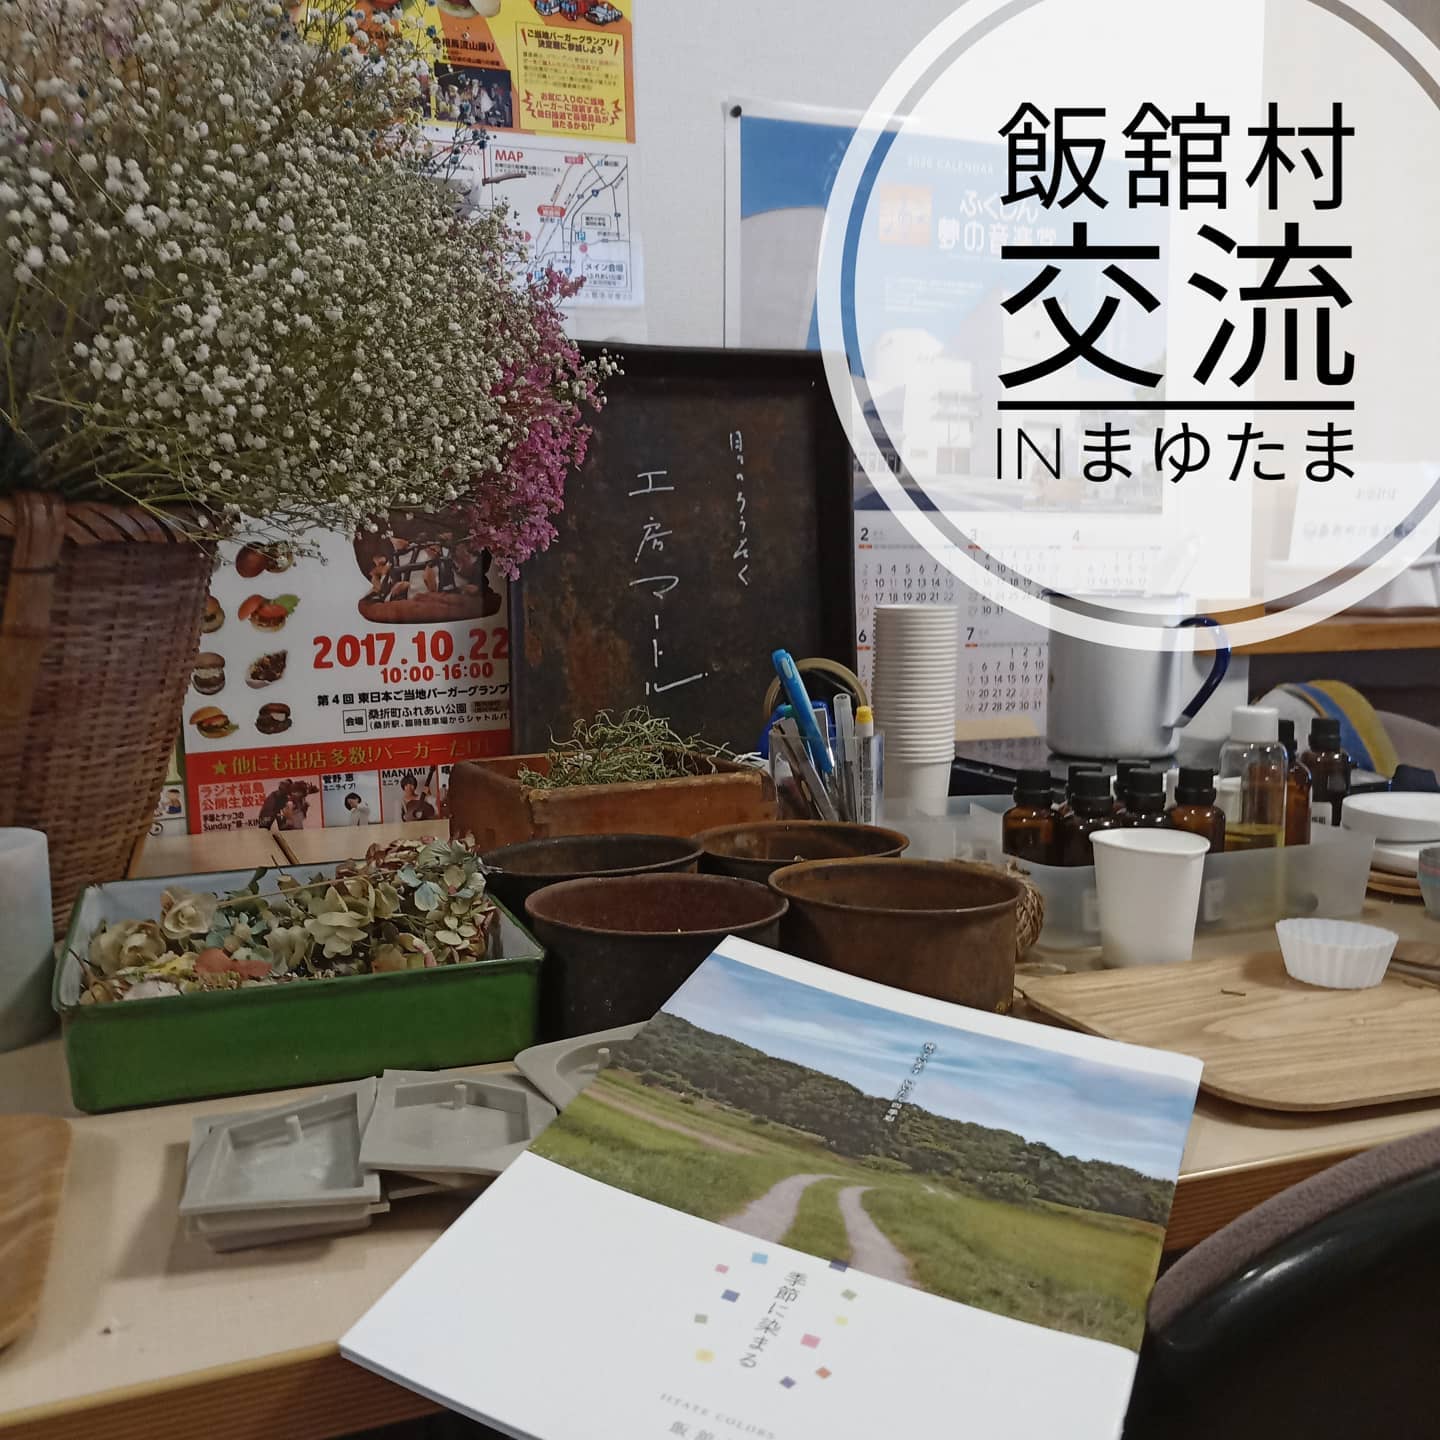 【飯舘村のキャンドル】まゆたまで開催中のあっちこっちショップ。今日は、飯舘村の地域おこし協力隊の大槻さんがいらっしゃって、お花を使ったキャンドル作りが体験できます。